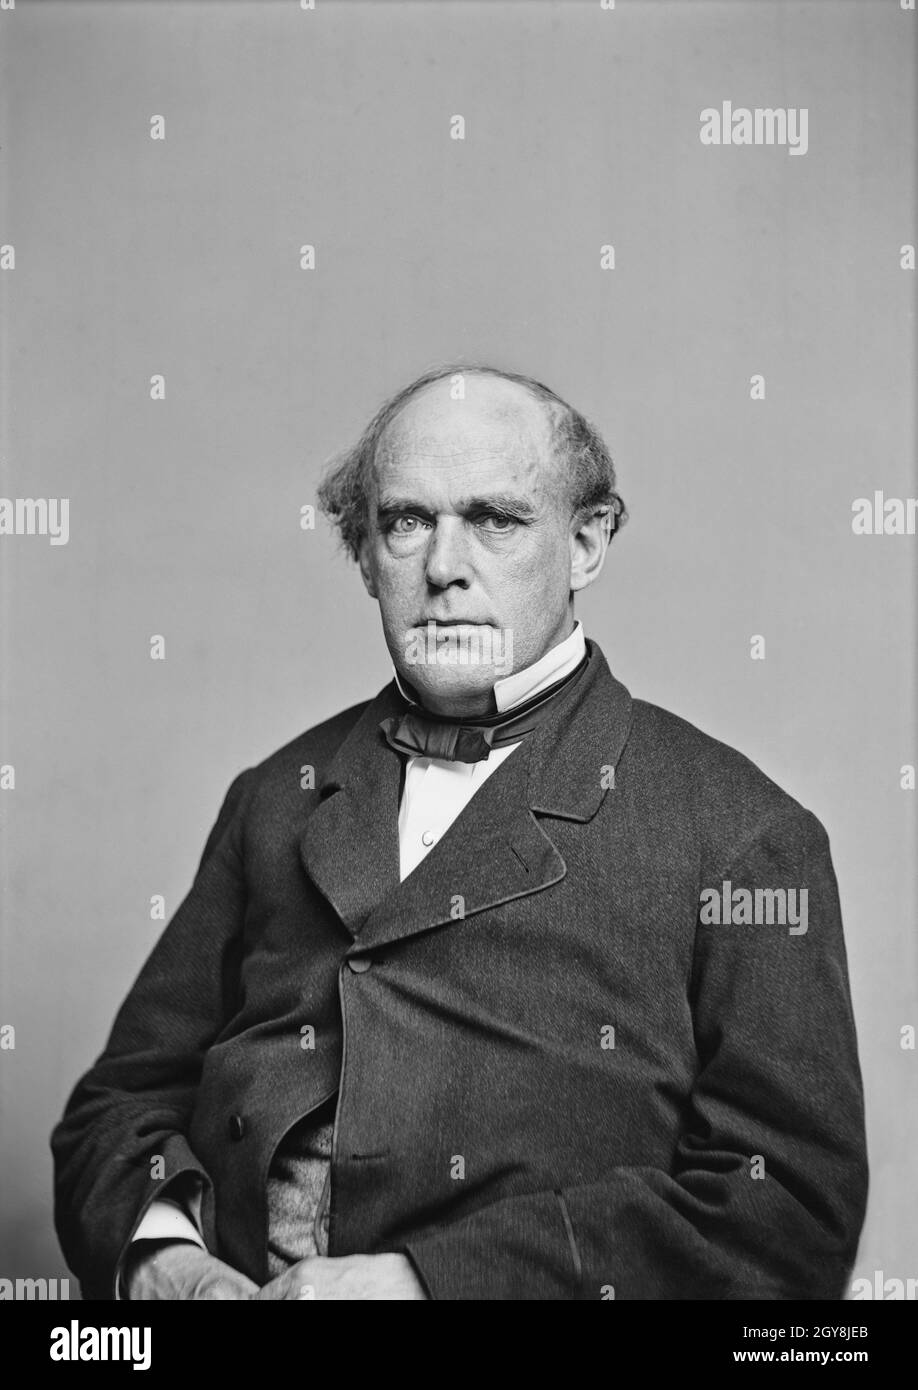 Salmon P. Chase (1808-1873), homme politique et juriste américain, a été gouverneur et sénateur de l'Ohio, sixième juge en chef des États-Unis, ainsi que des États-Unis.Secrétaire du Trésor, l'un des quelques politiciens américains à servir dans les trois branches du gouvernement fédéral, demi-longueur Portrait, Mathew Brady Studio, 1860's. Banque D'Images